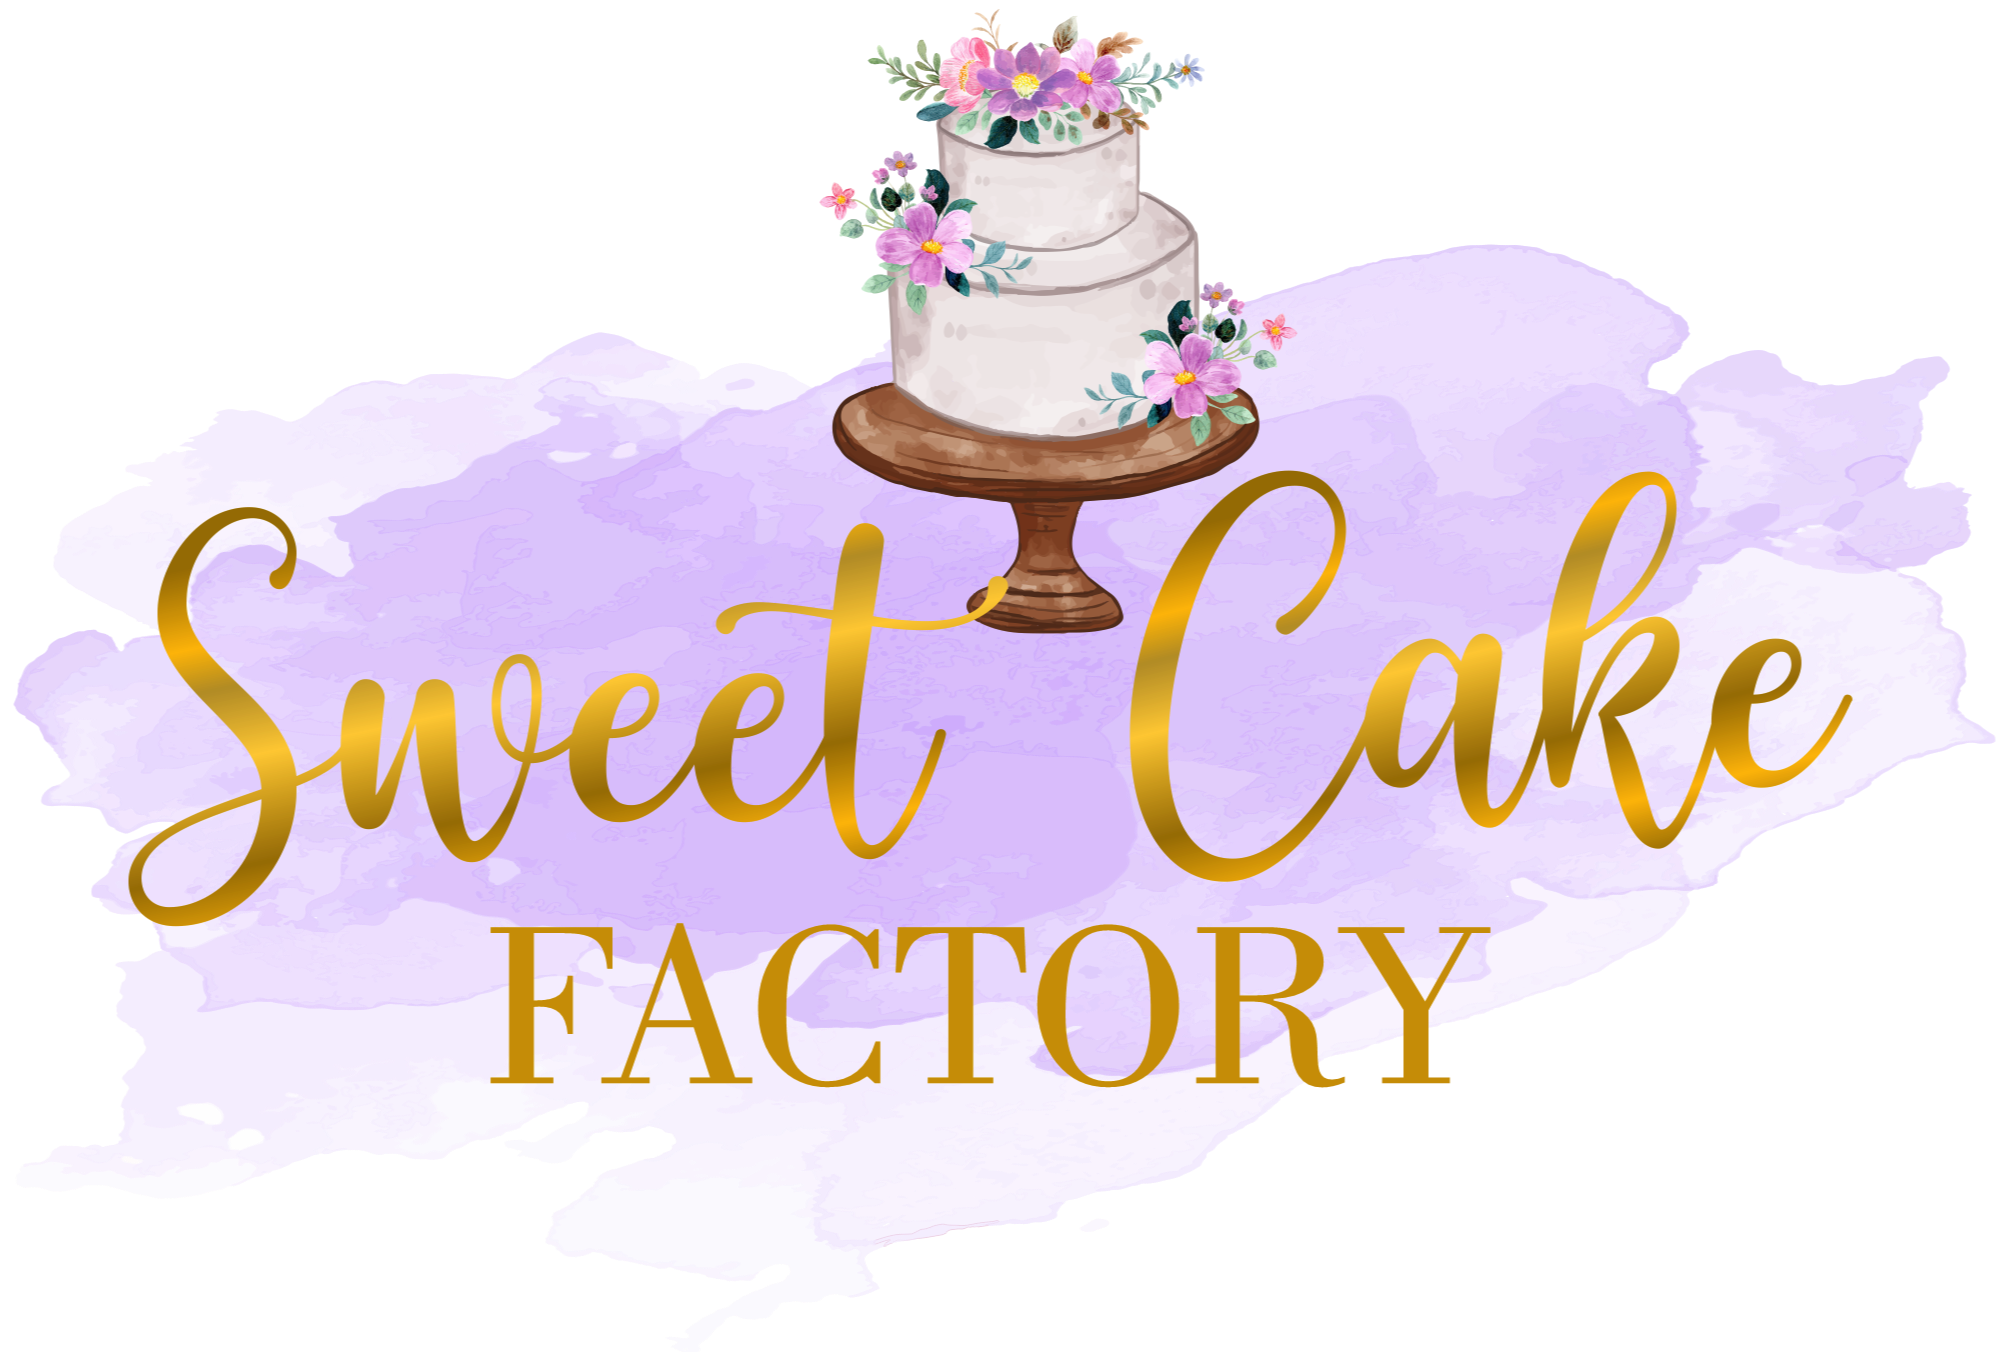 Sweet Cake Factory